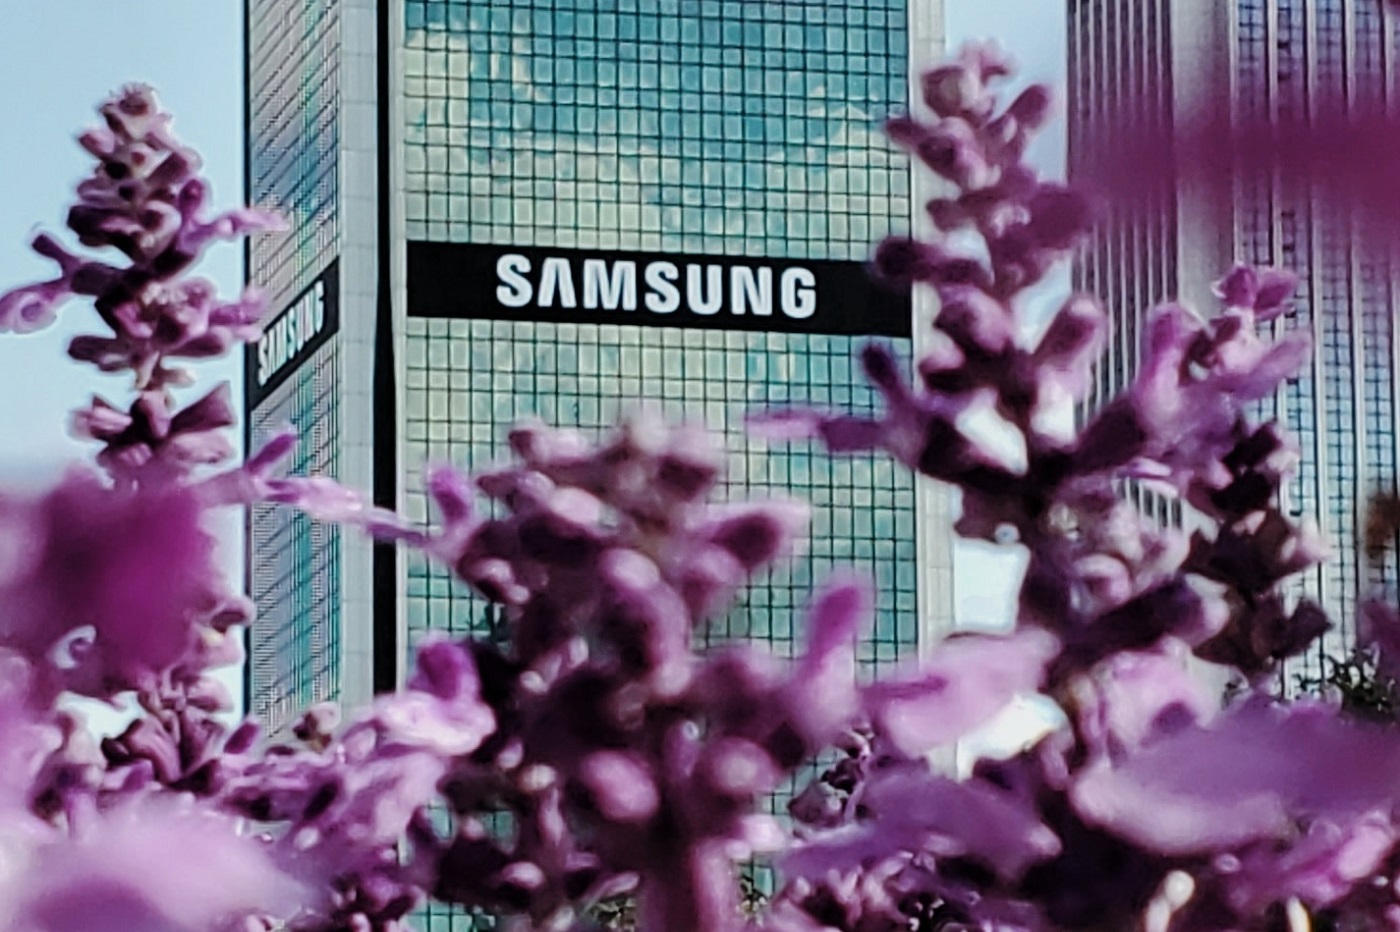 Samsung aimerait être inspiré par Apple en se concentrant sur les services